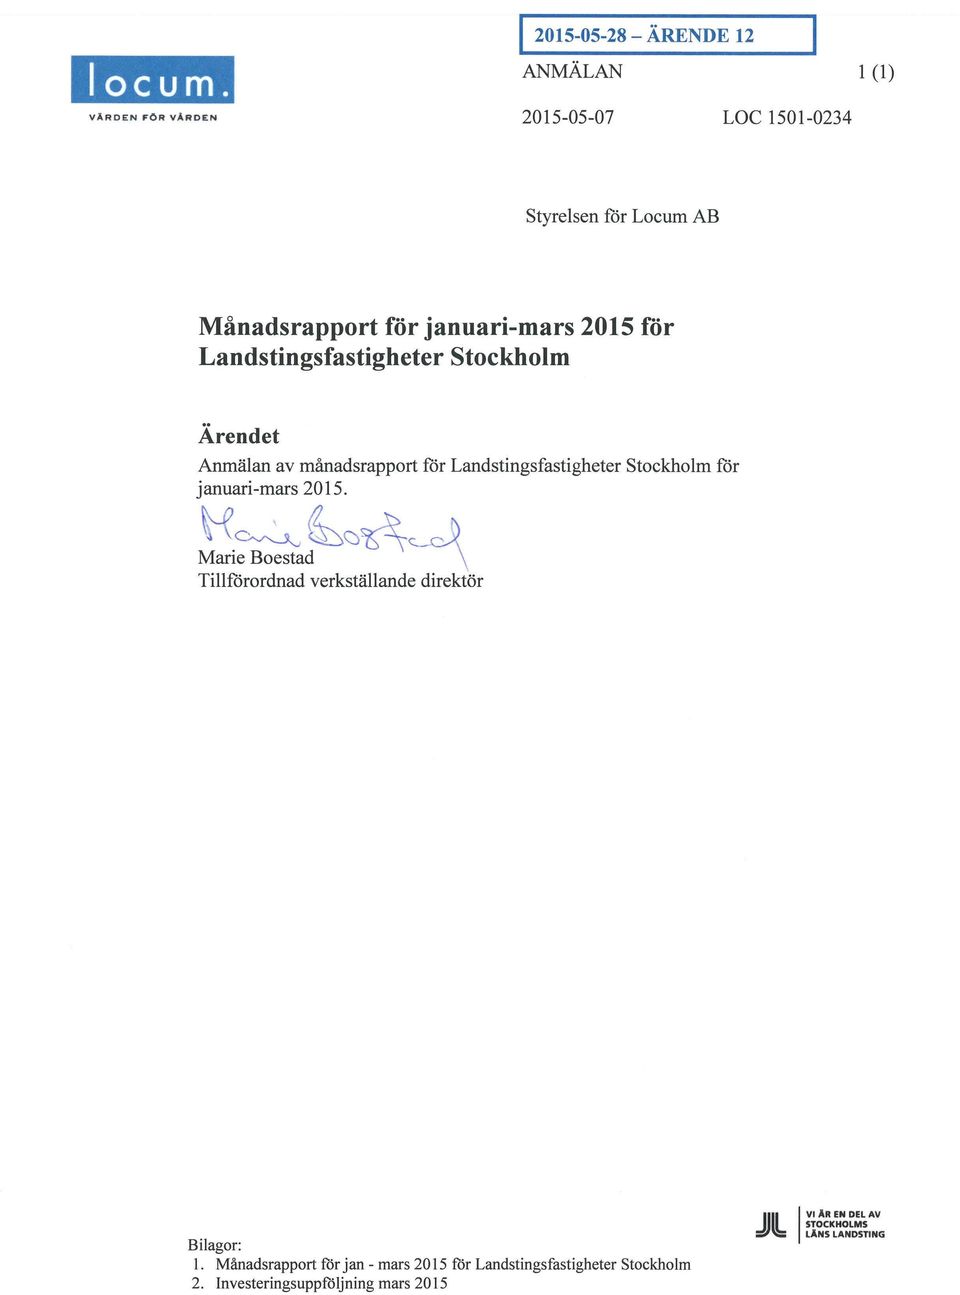 Anmälan av månadsrapport för Landstingsfastightr januari-mars 2015.